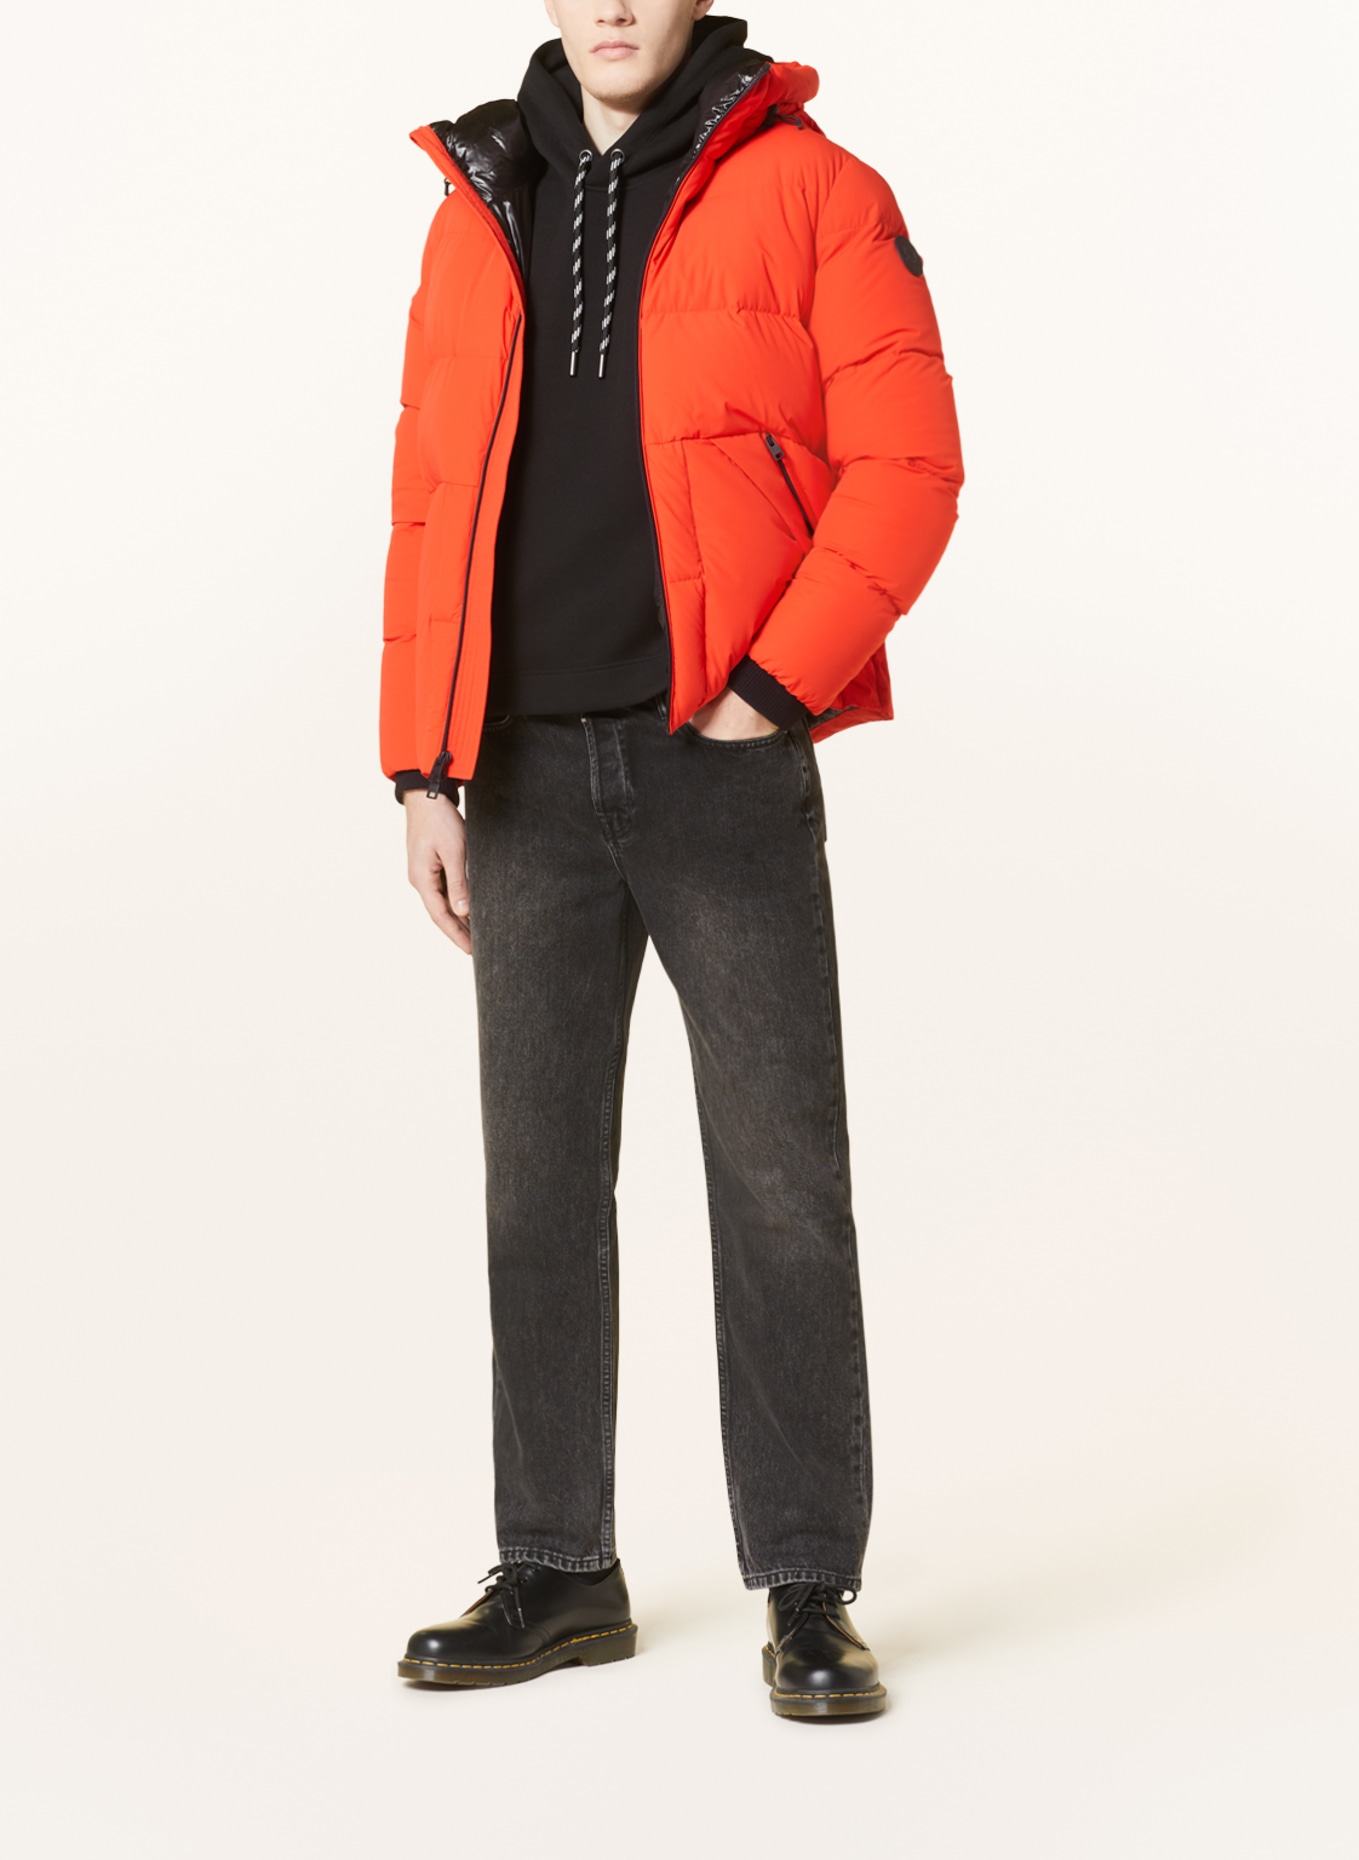 Woolrich Men's Sierra Long Jacket Detachable Hood - Frank's Sports Shop